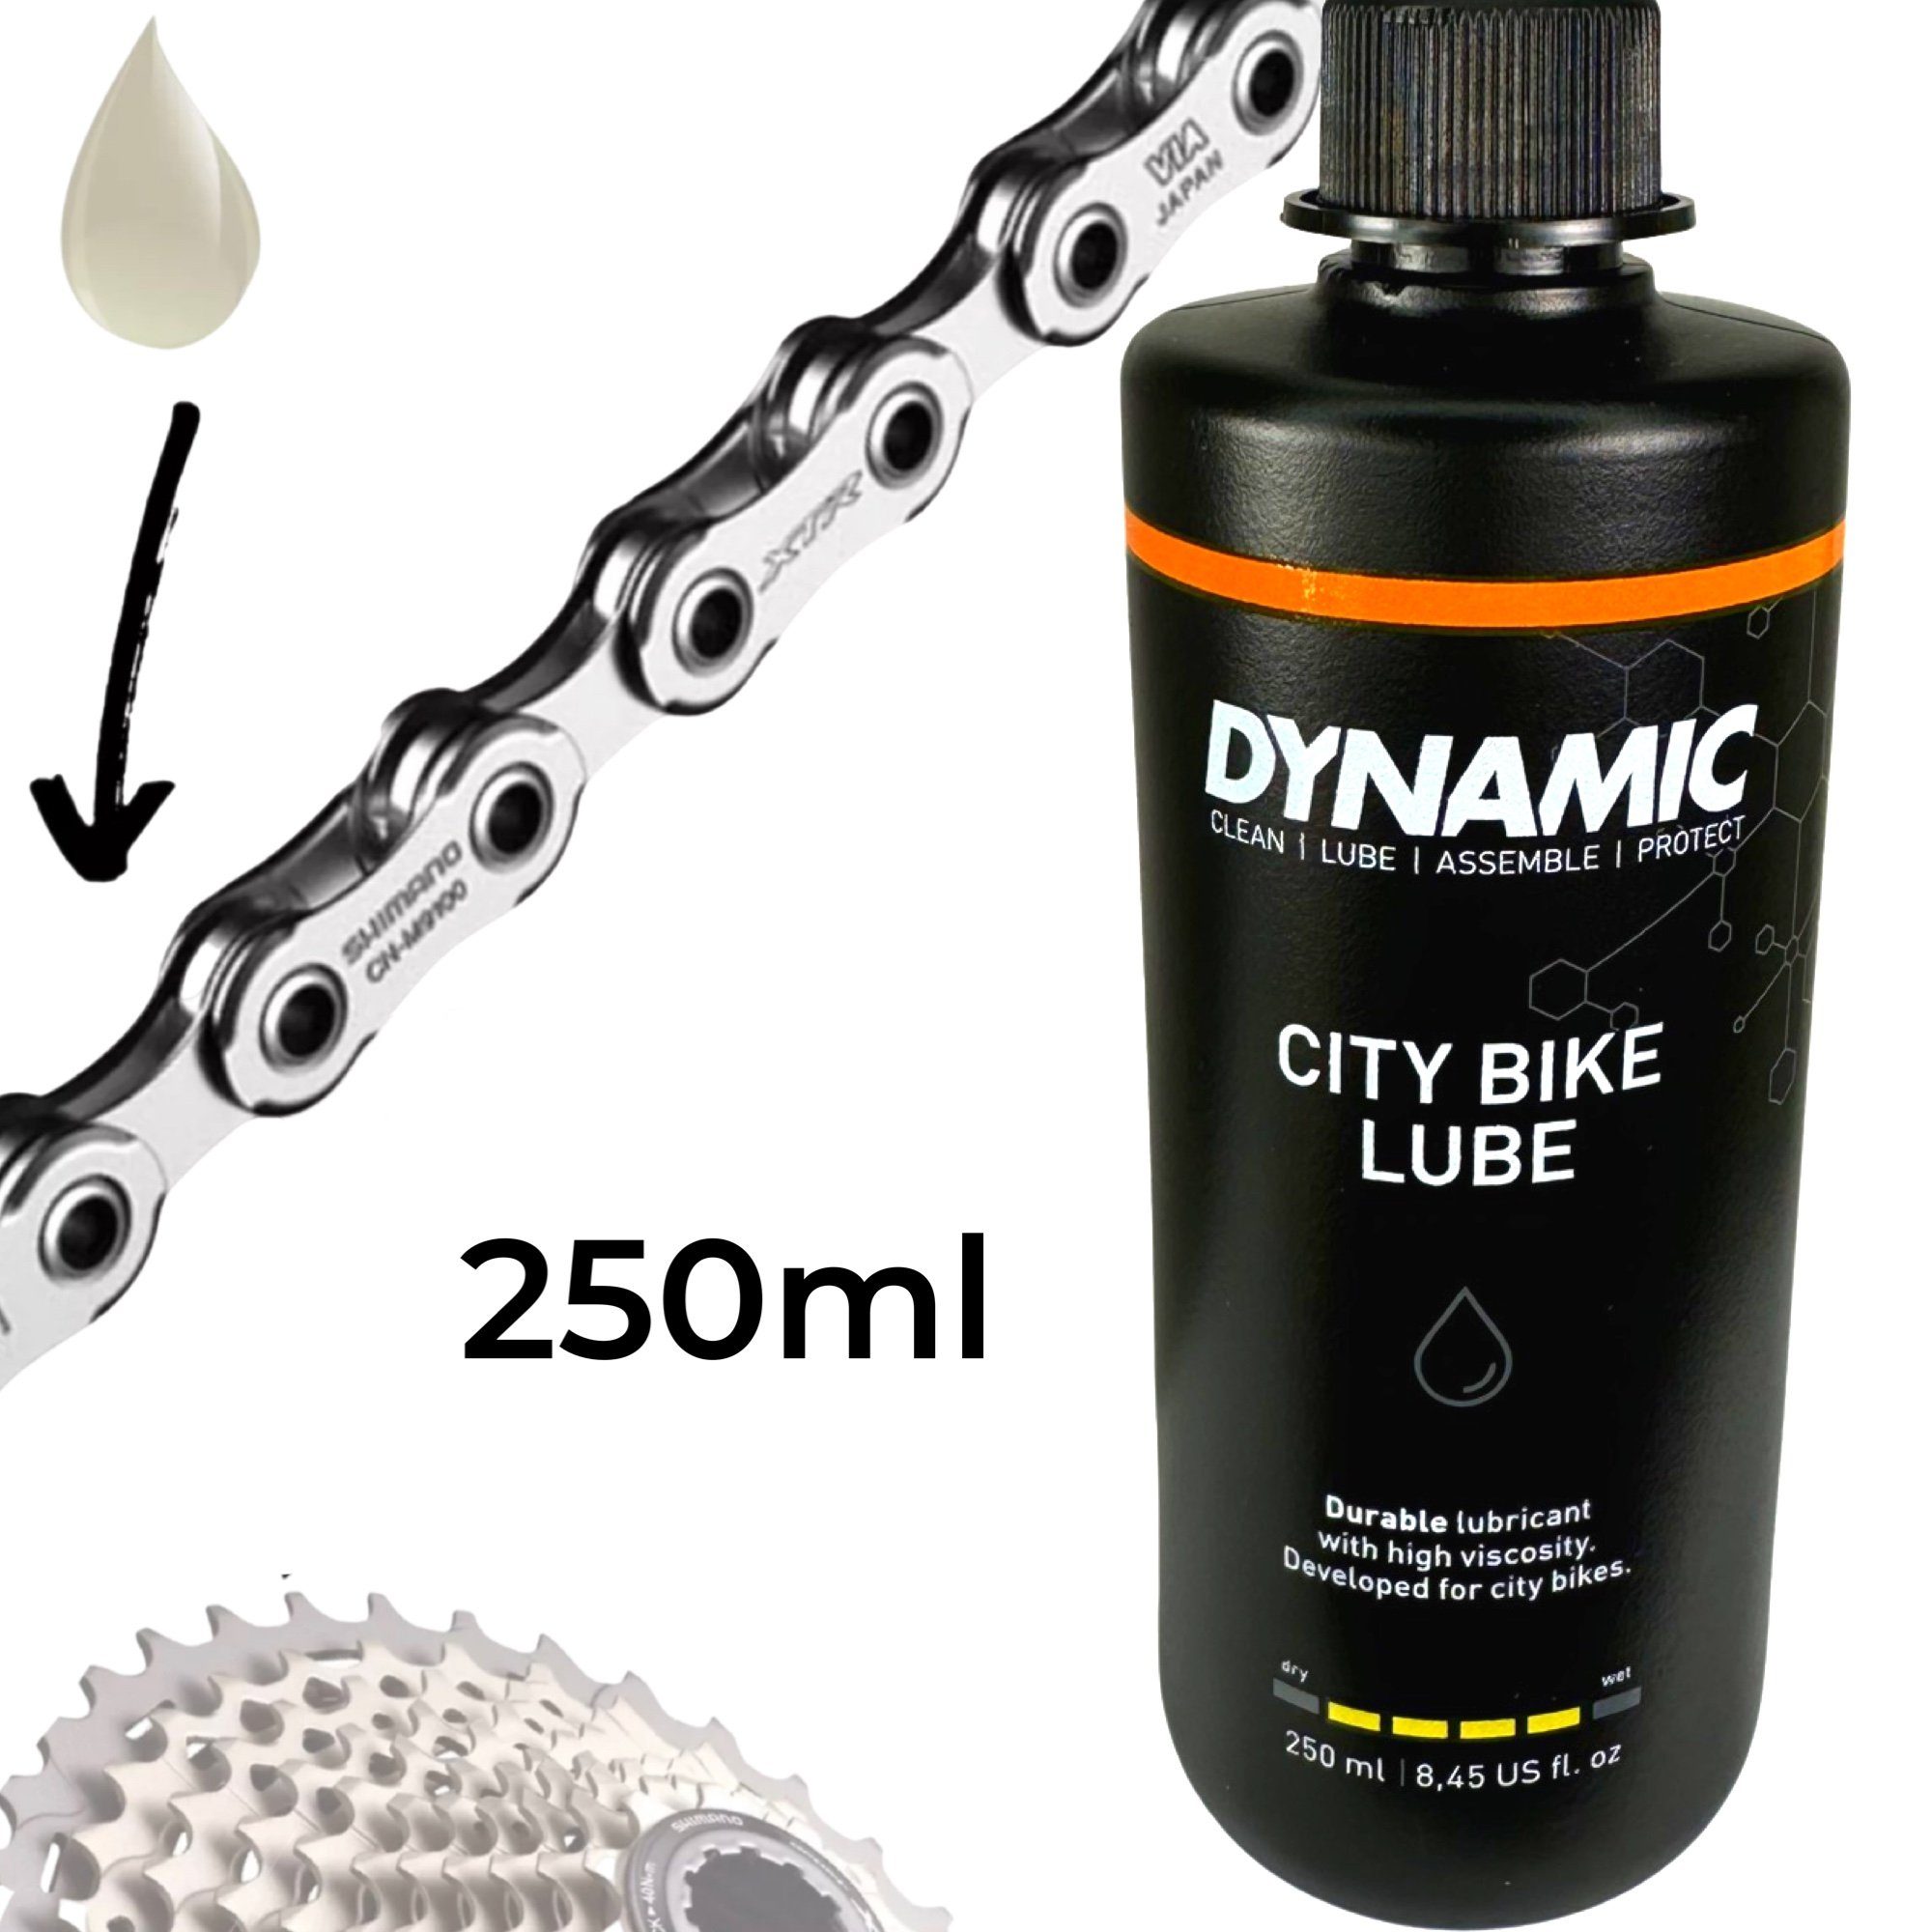 Dynamic DY-015 Fahrrad Kettenöl Fahrrad-Montageständer City 250ml Lube Ebike dynamic Ketten Bike